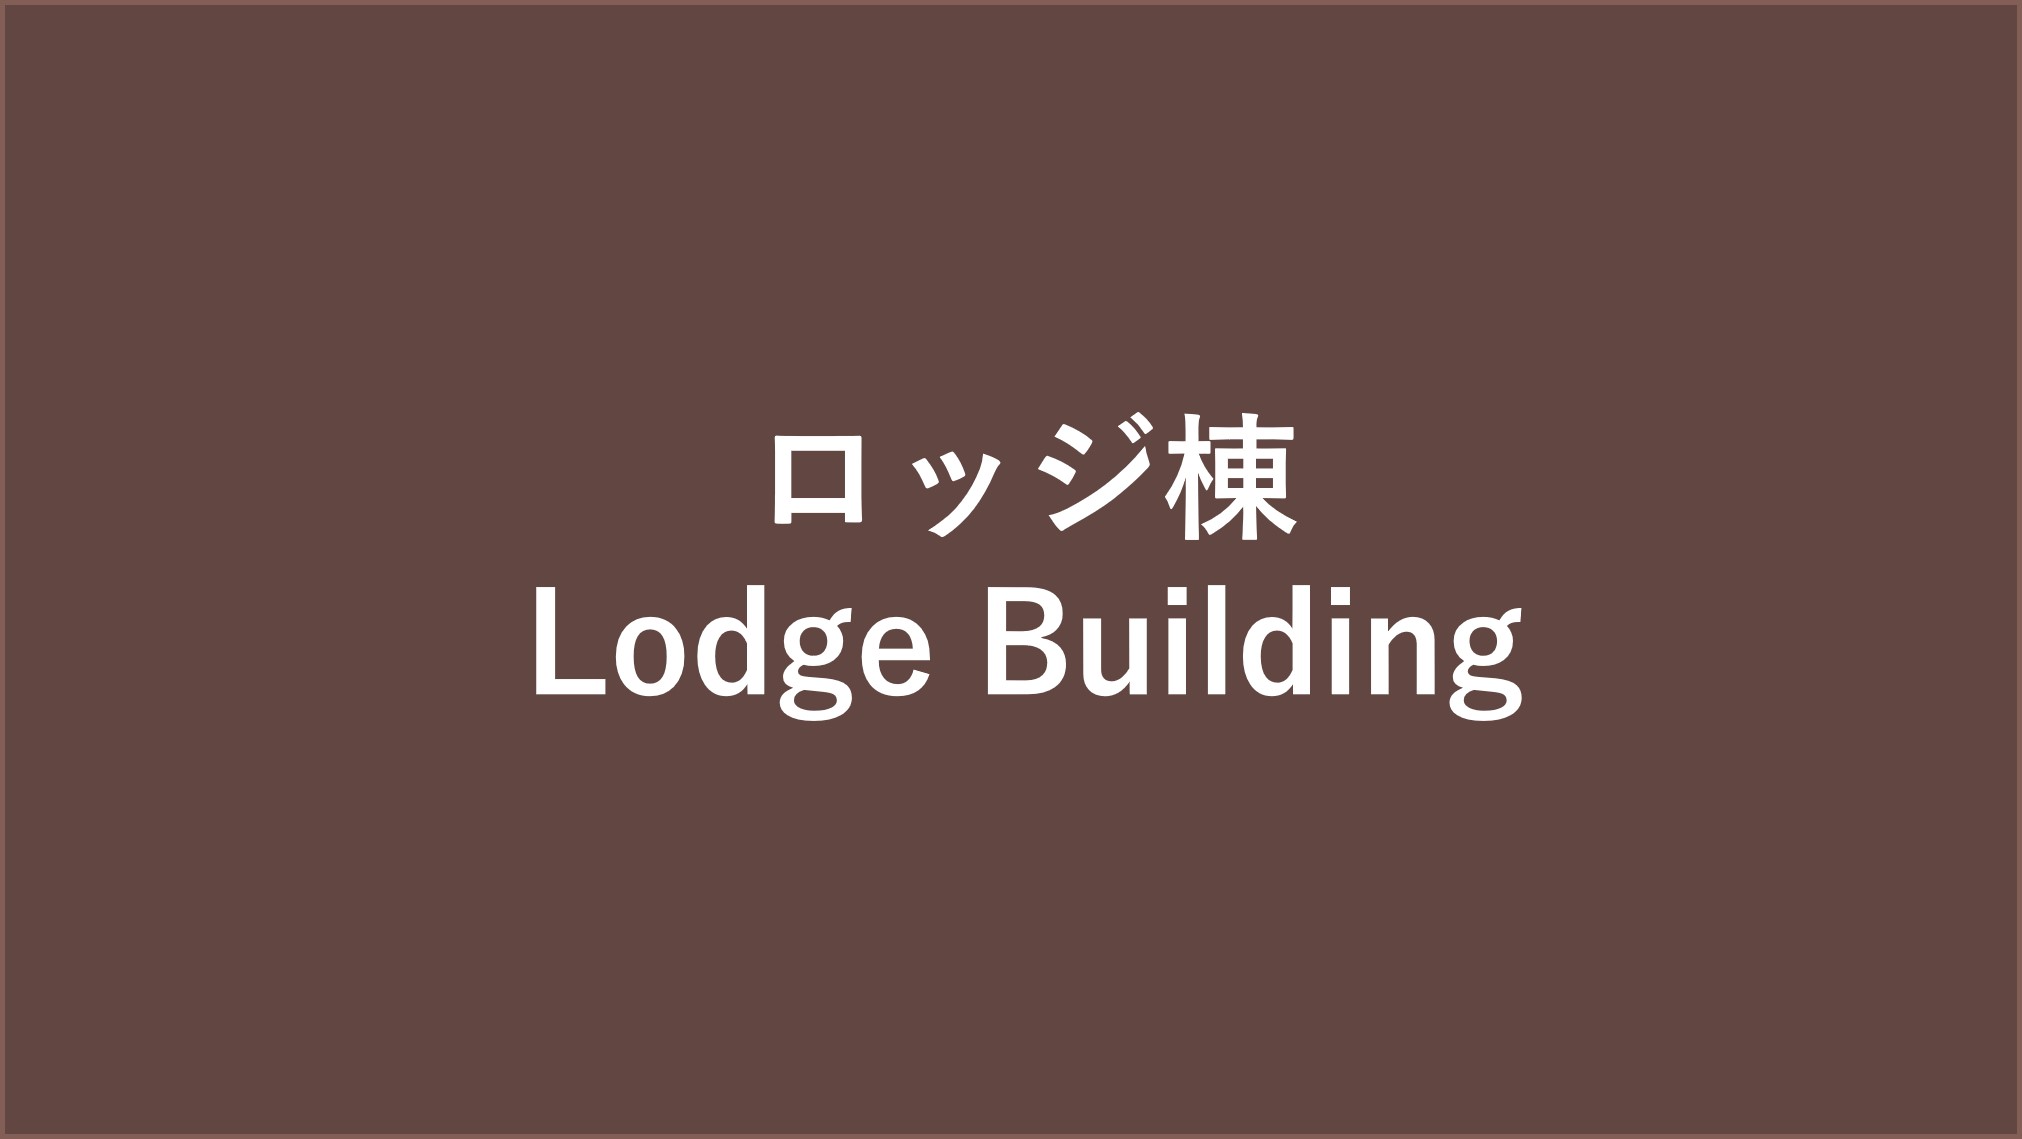 ロッジ棟 / Lodge Building